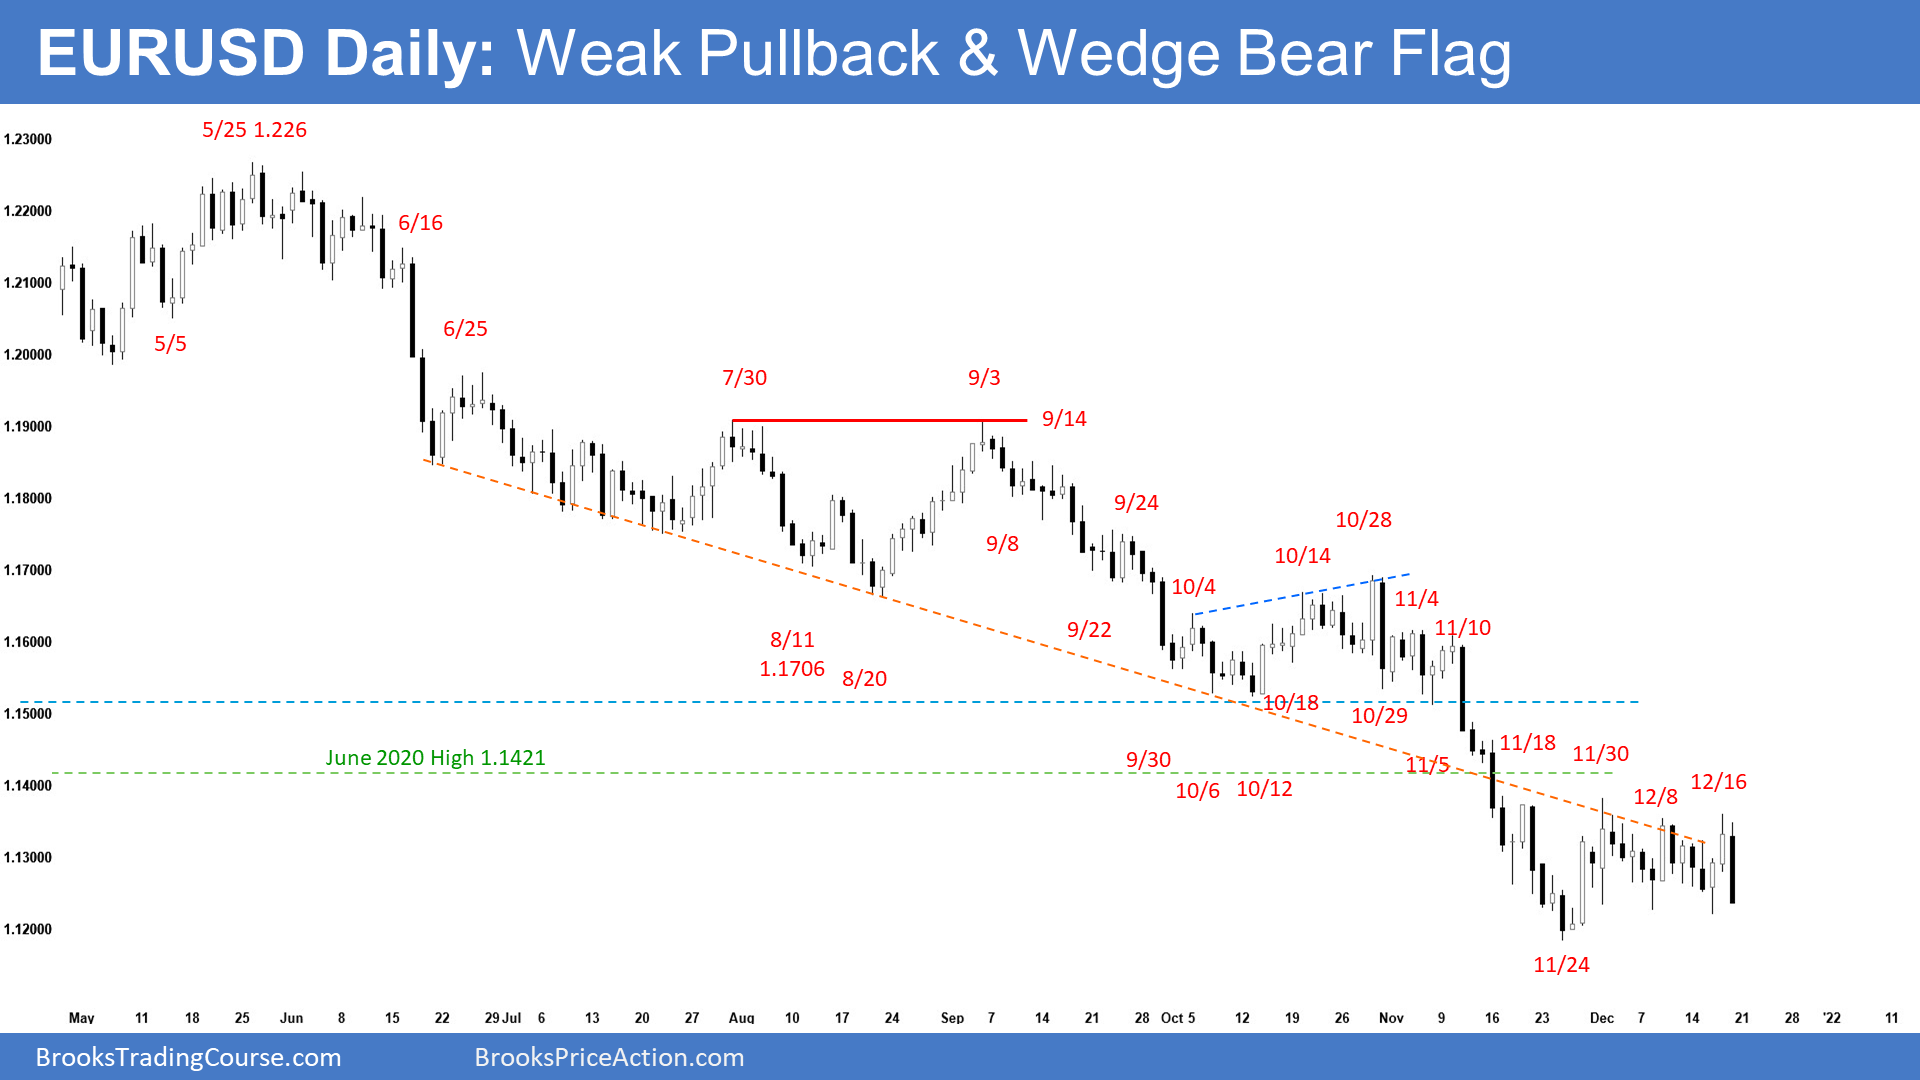 EURUSD Daily chart - Weak pullback and wedge bear flag